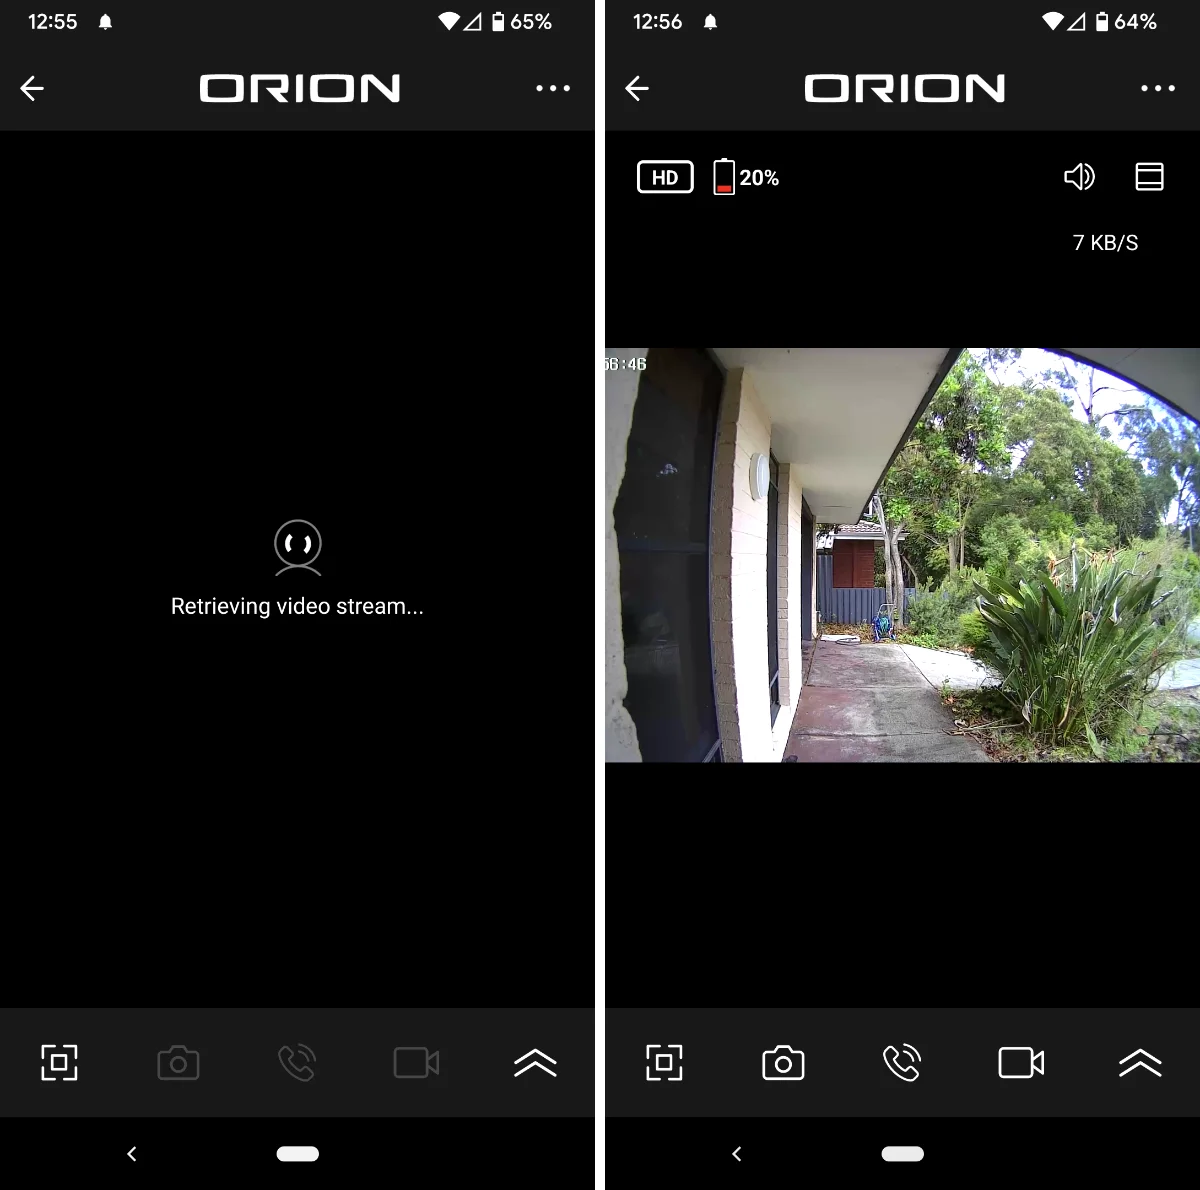 Orion Smart Doorbell